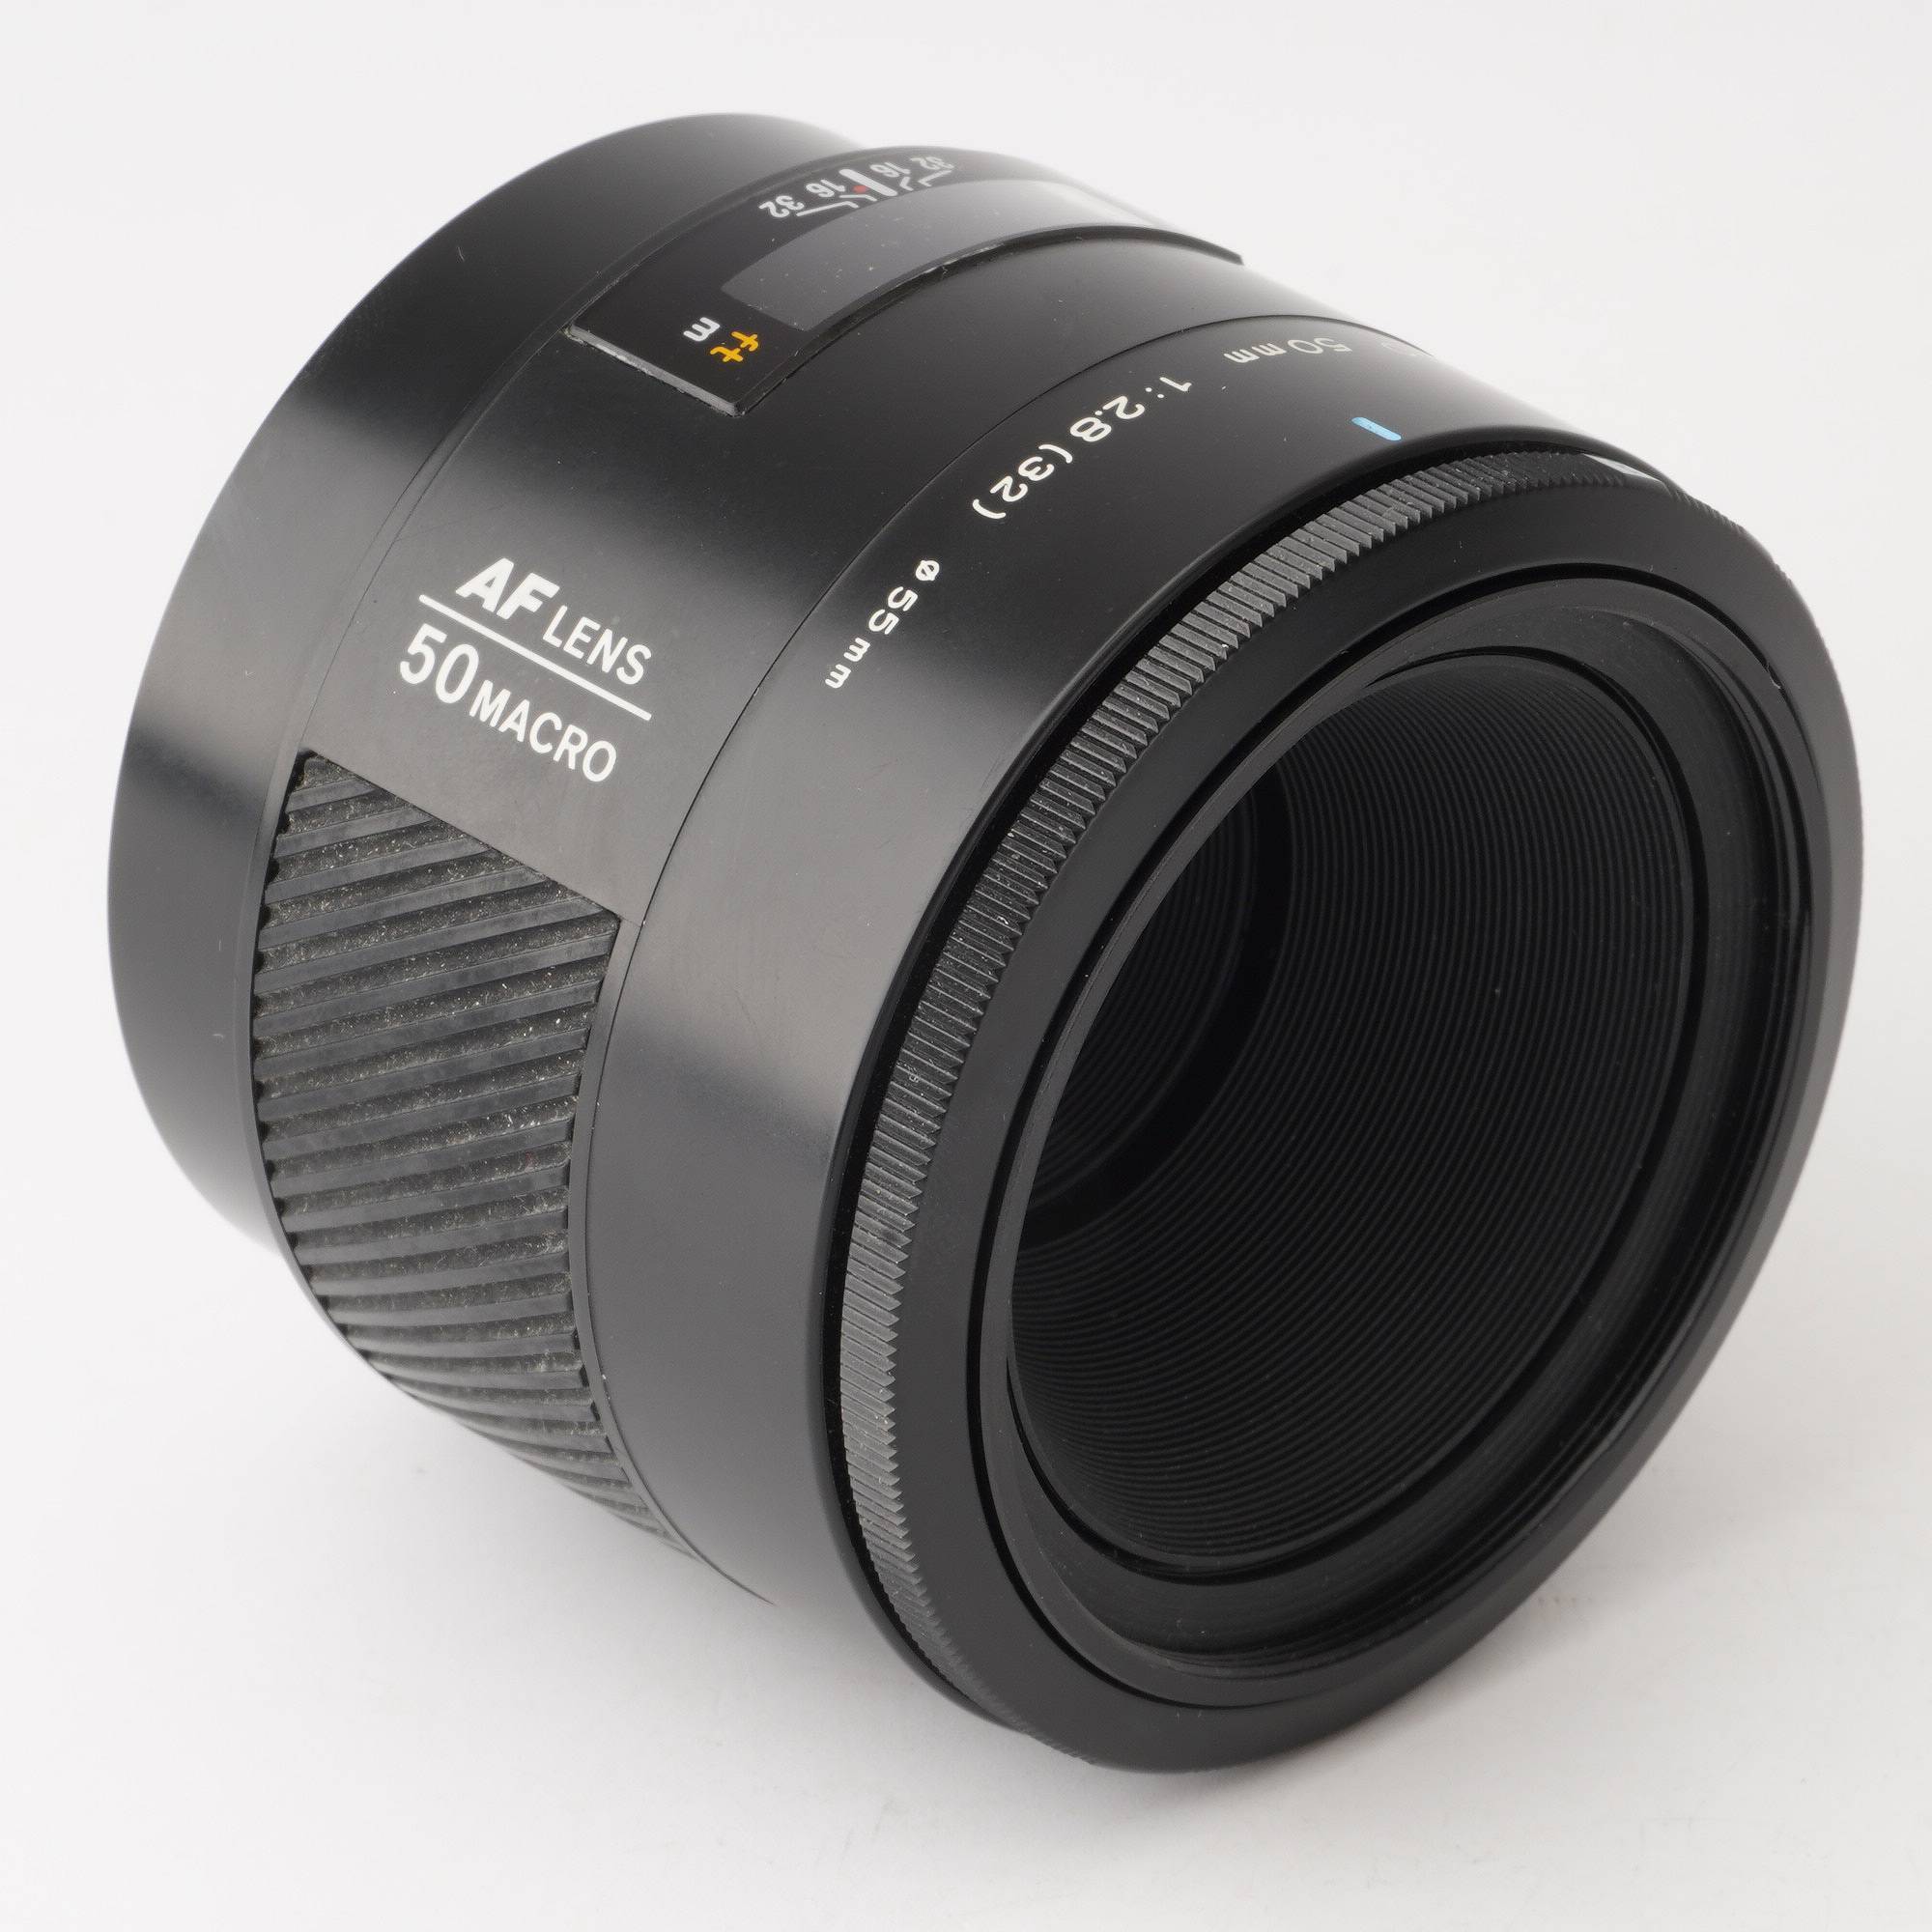 Minolta AF レンズ 50mm F2.8 Macro (D)-